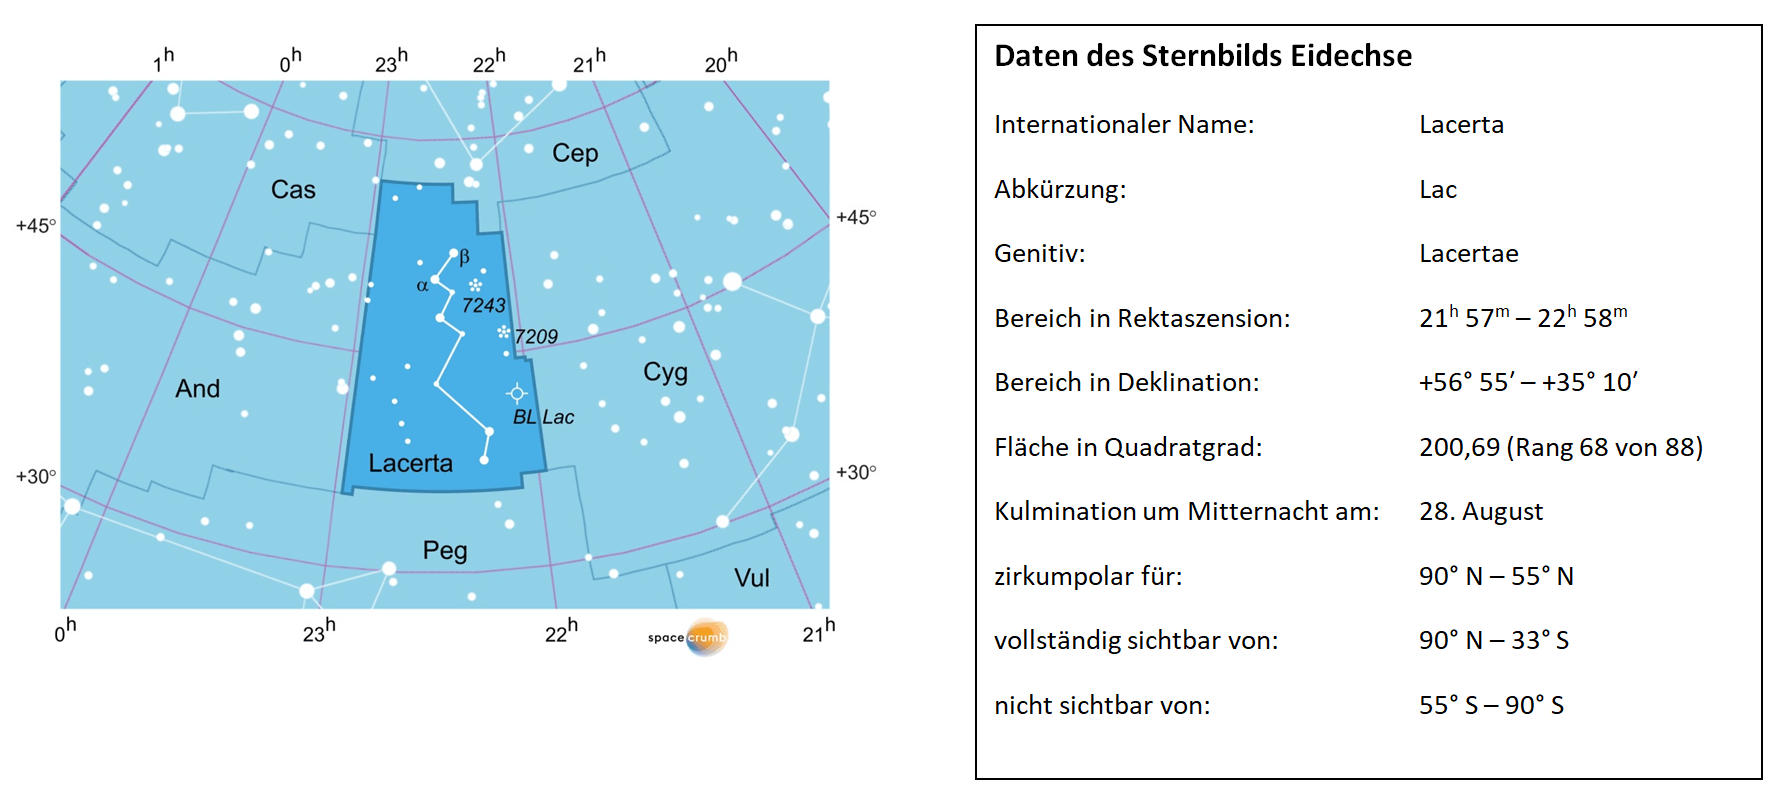 Links zeigt eine mit Koordinaten versehene Karte eines Himmelsausschnitts weiße Sterne auf hellblauem Hintergrund. Die Fläche, die das Sternbild Eidechse einnimmt, ist dunkelblau hervorgehoben. Eine Tabelle rechts gibt wichtige Daten des Sternbilds Eidechse an.